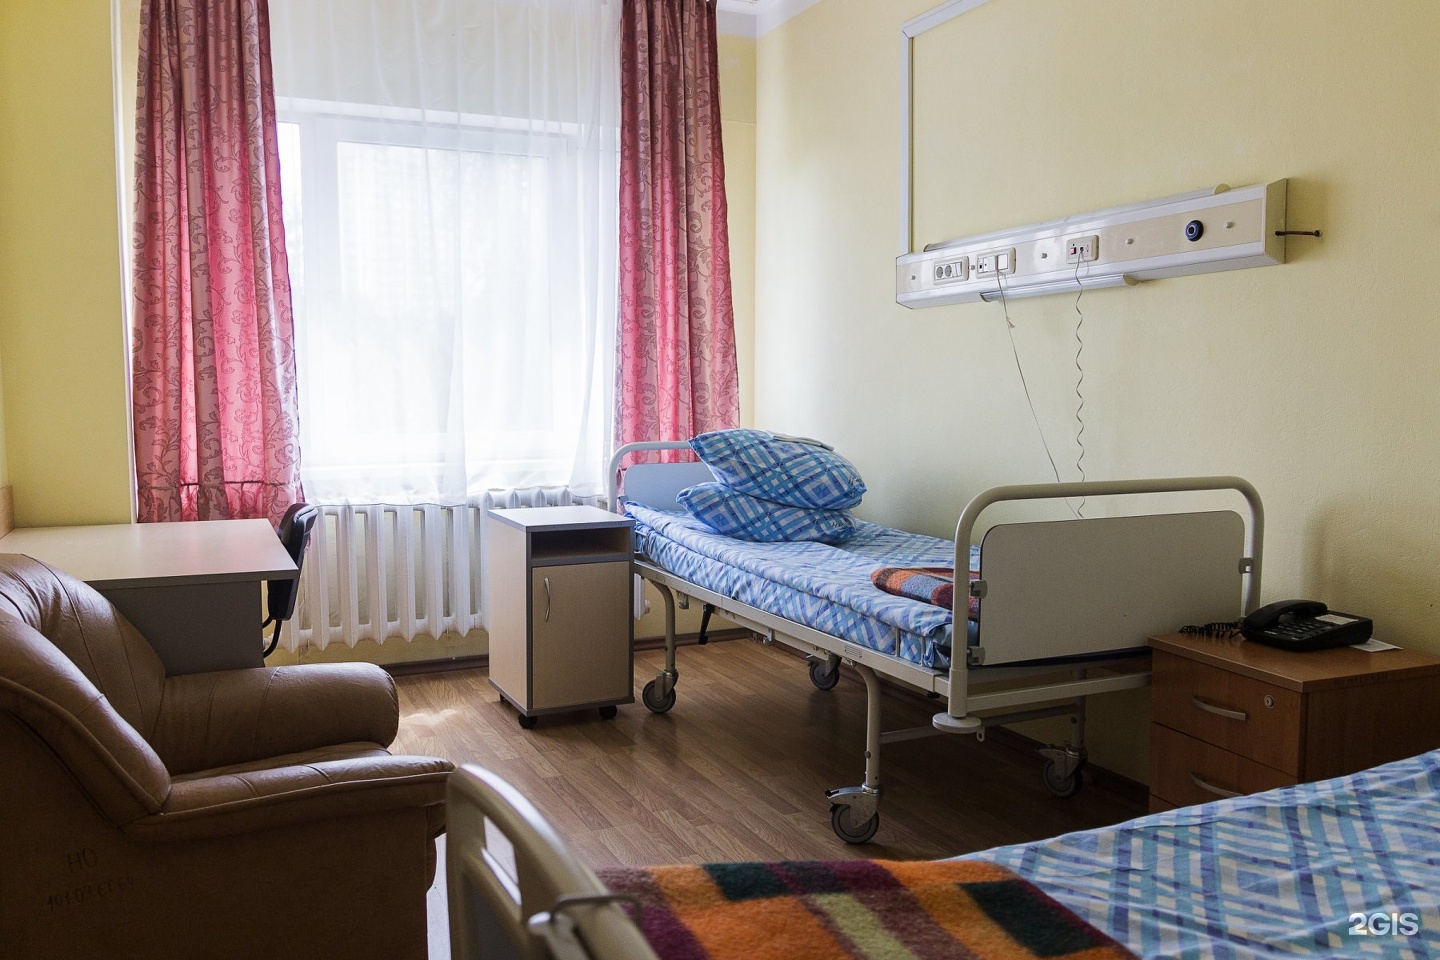 платные больницы в москве